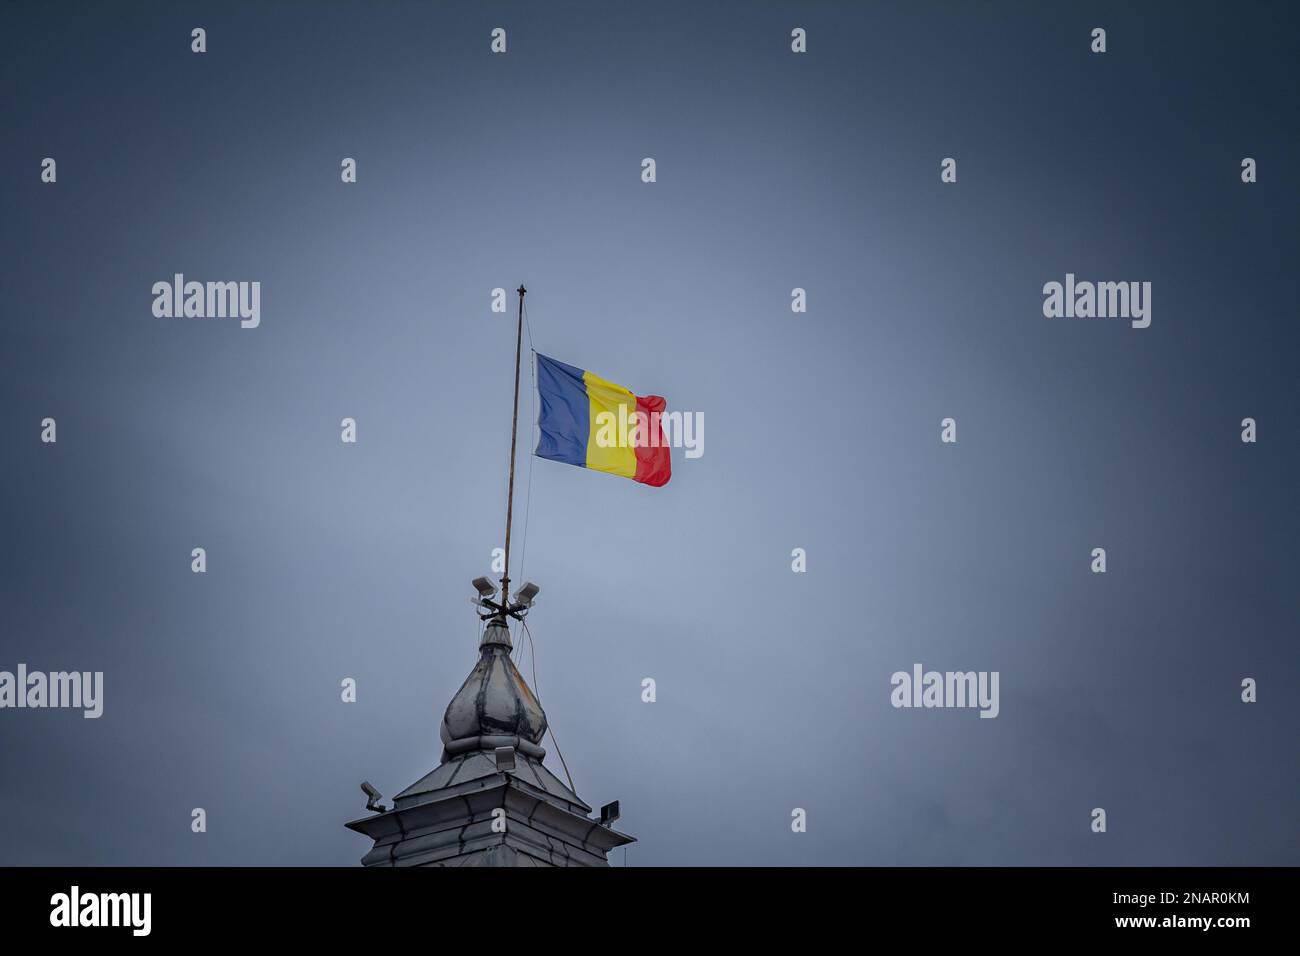 Immagine di una bandiera rumena che vola in aria a Timisoara, la capitale della Romania. La bandiera nazionale della Romania è un tricolore con fascia verticale Foto Stock